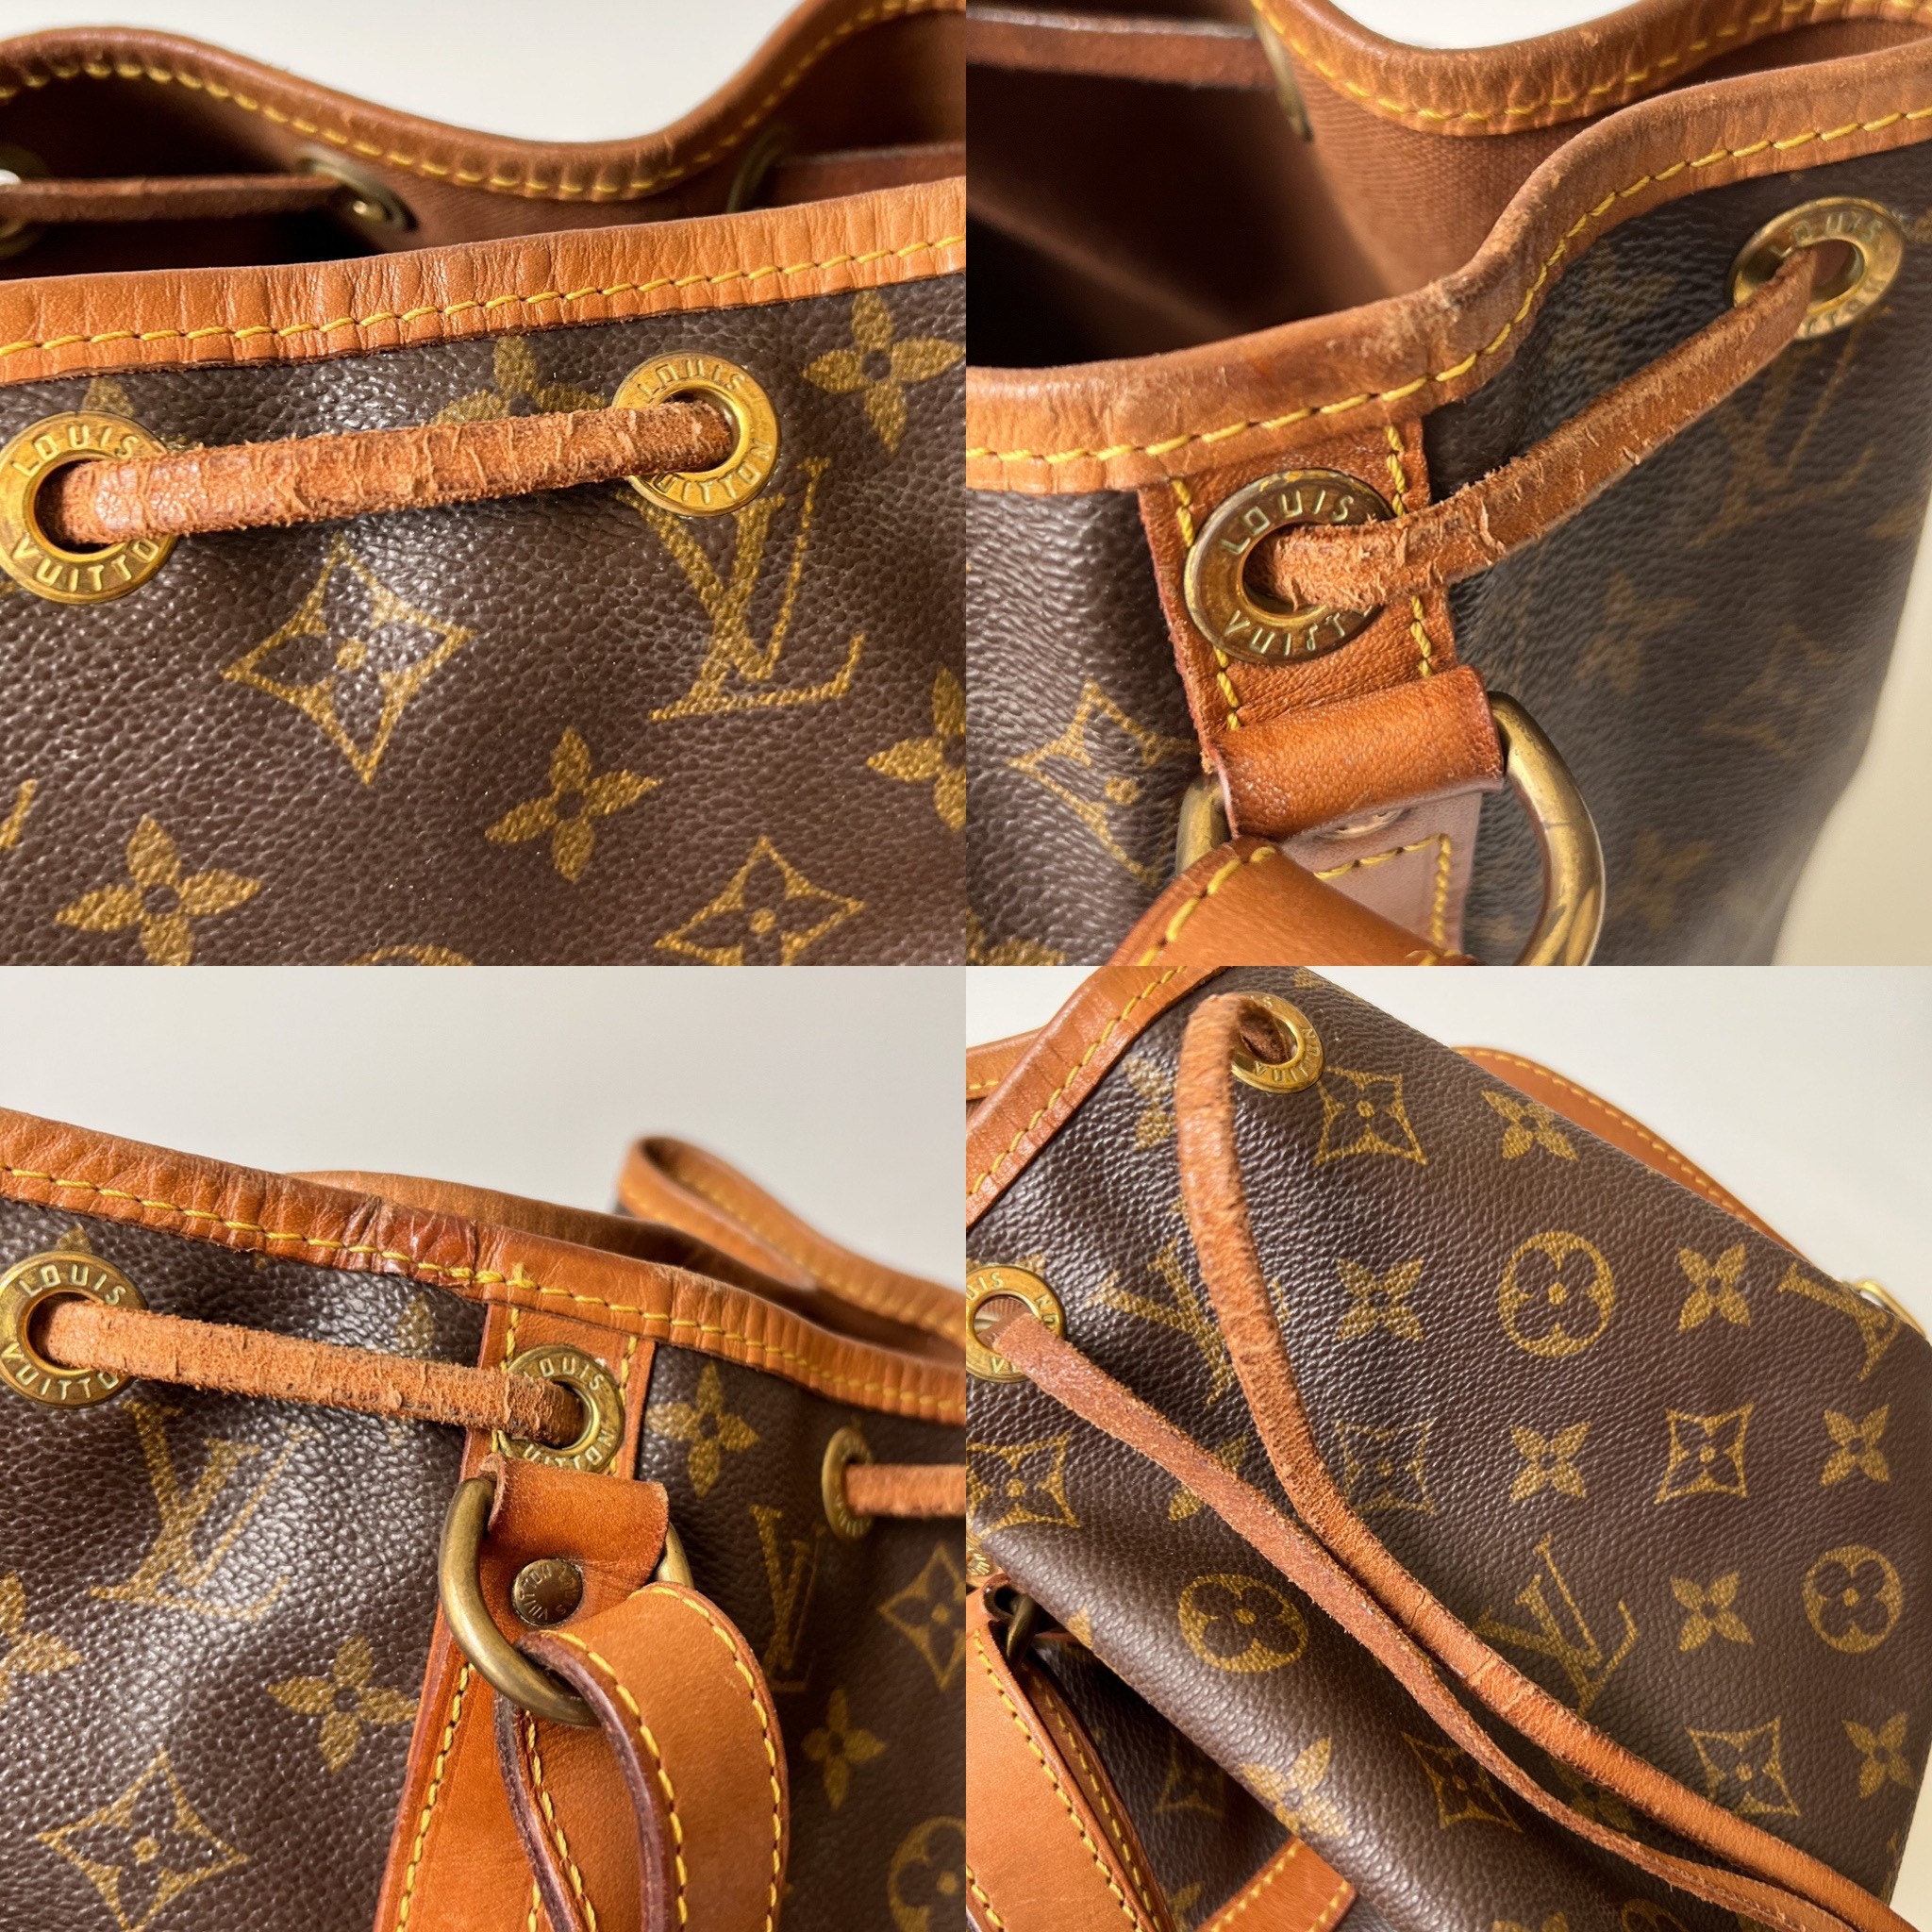 Louis Vuitton, Bags, Authentic Louis Vuitton Shoulder Bag Noe Monogram Used  Lv Handbag Vintage